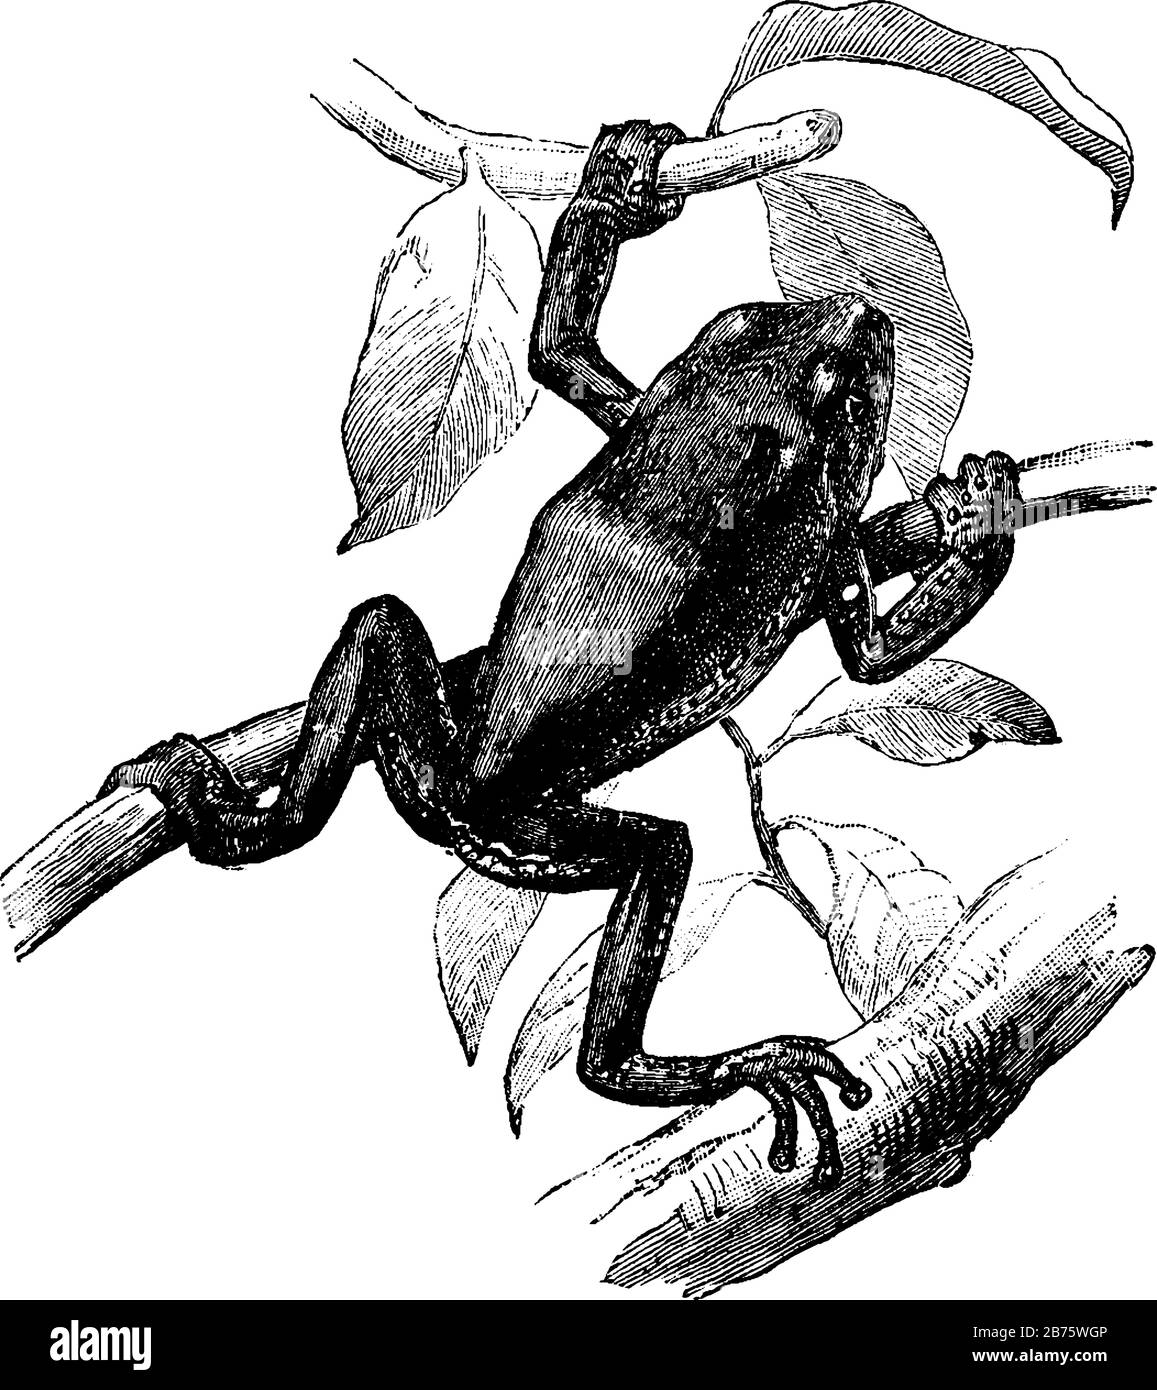 Une grenouille d'arbre perchée sur de nombreuses branches, dessin vintage ou illustration de gravure. Illustration de Vecteur